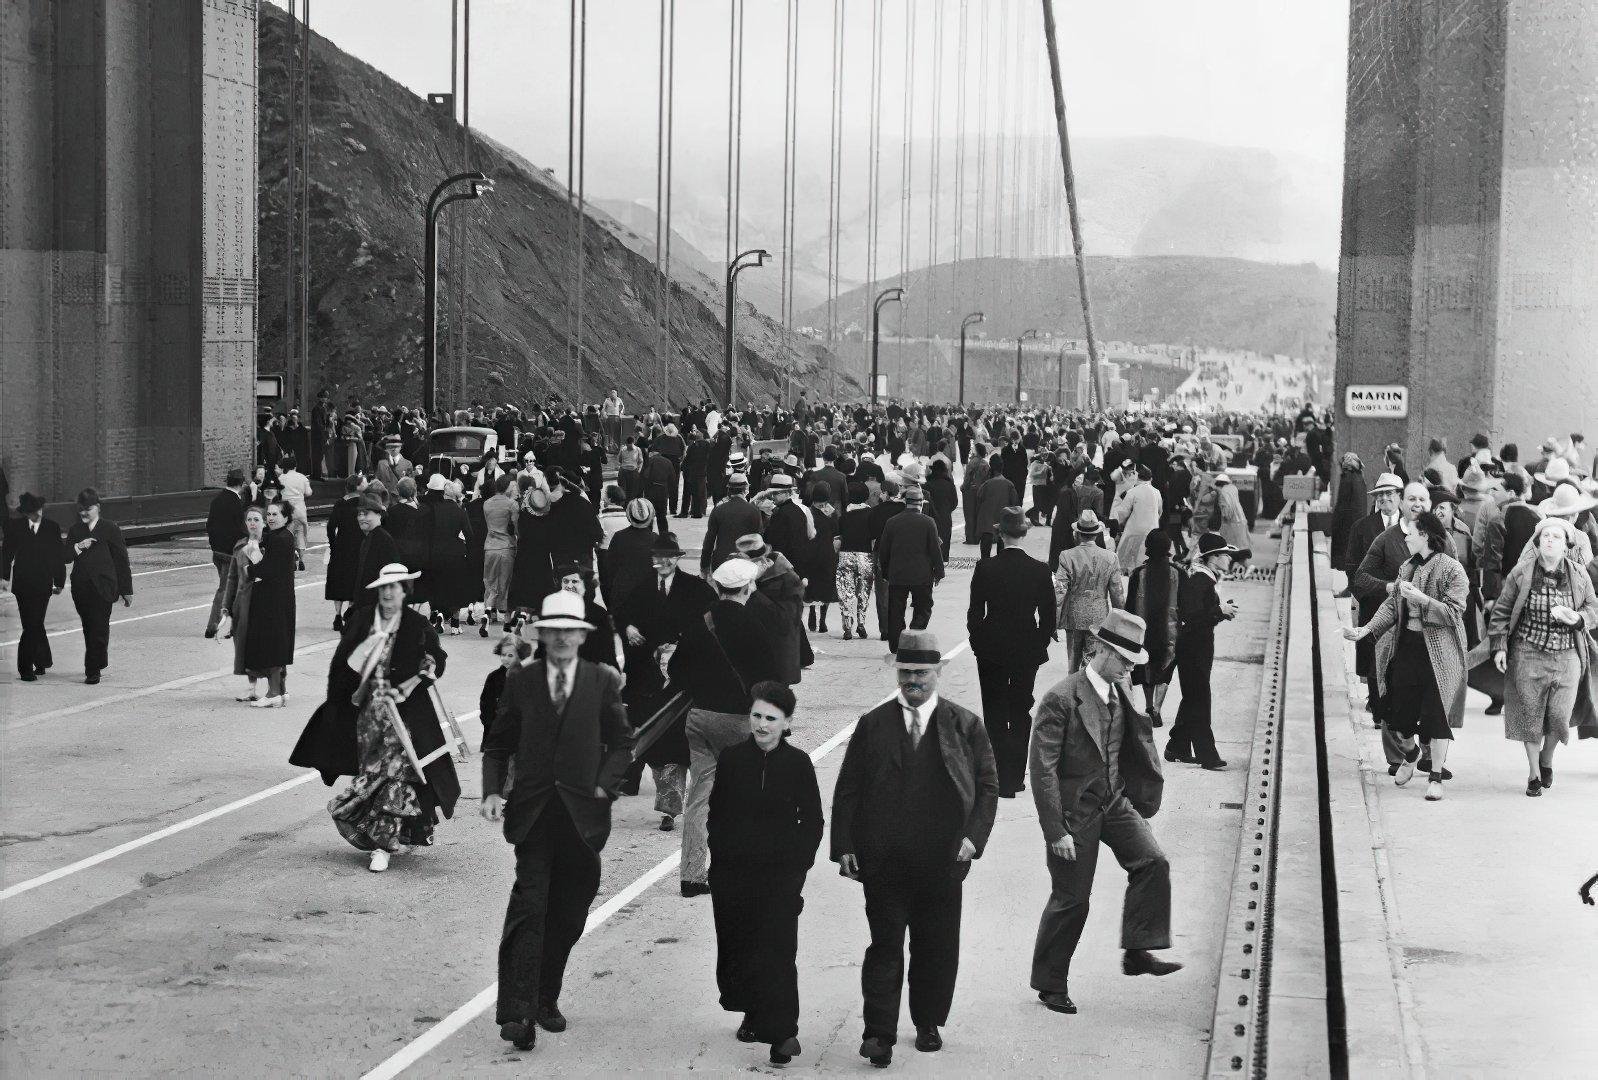 открытие золотого моста в канаде 1941 год